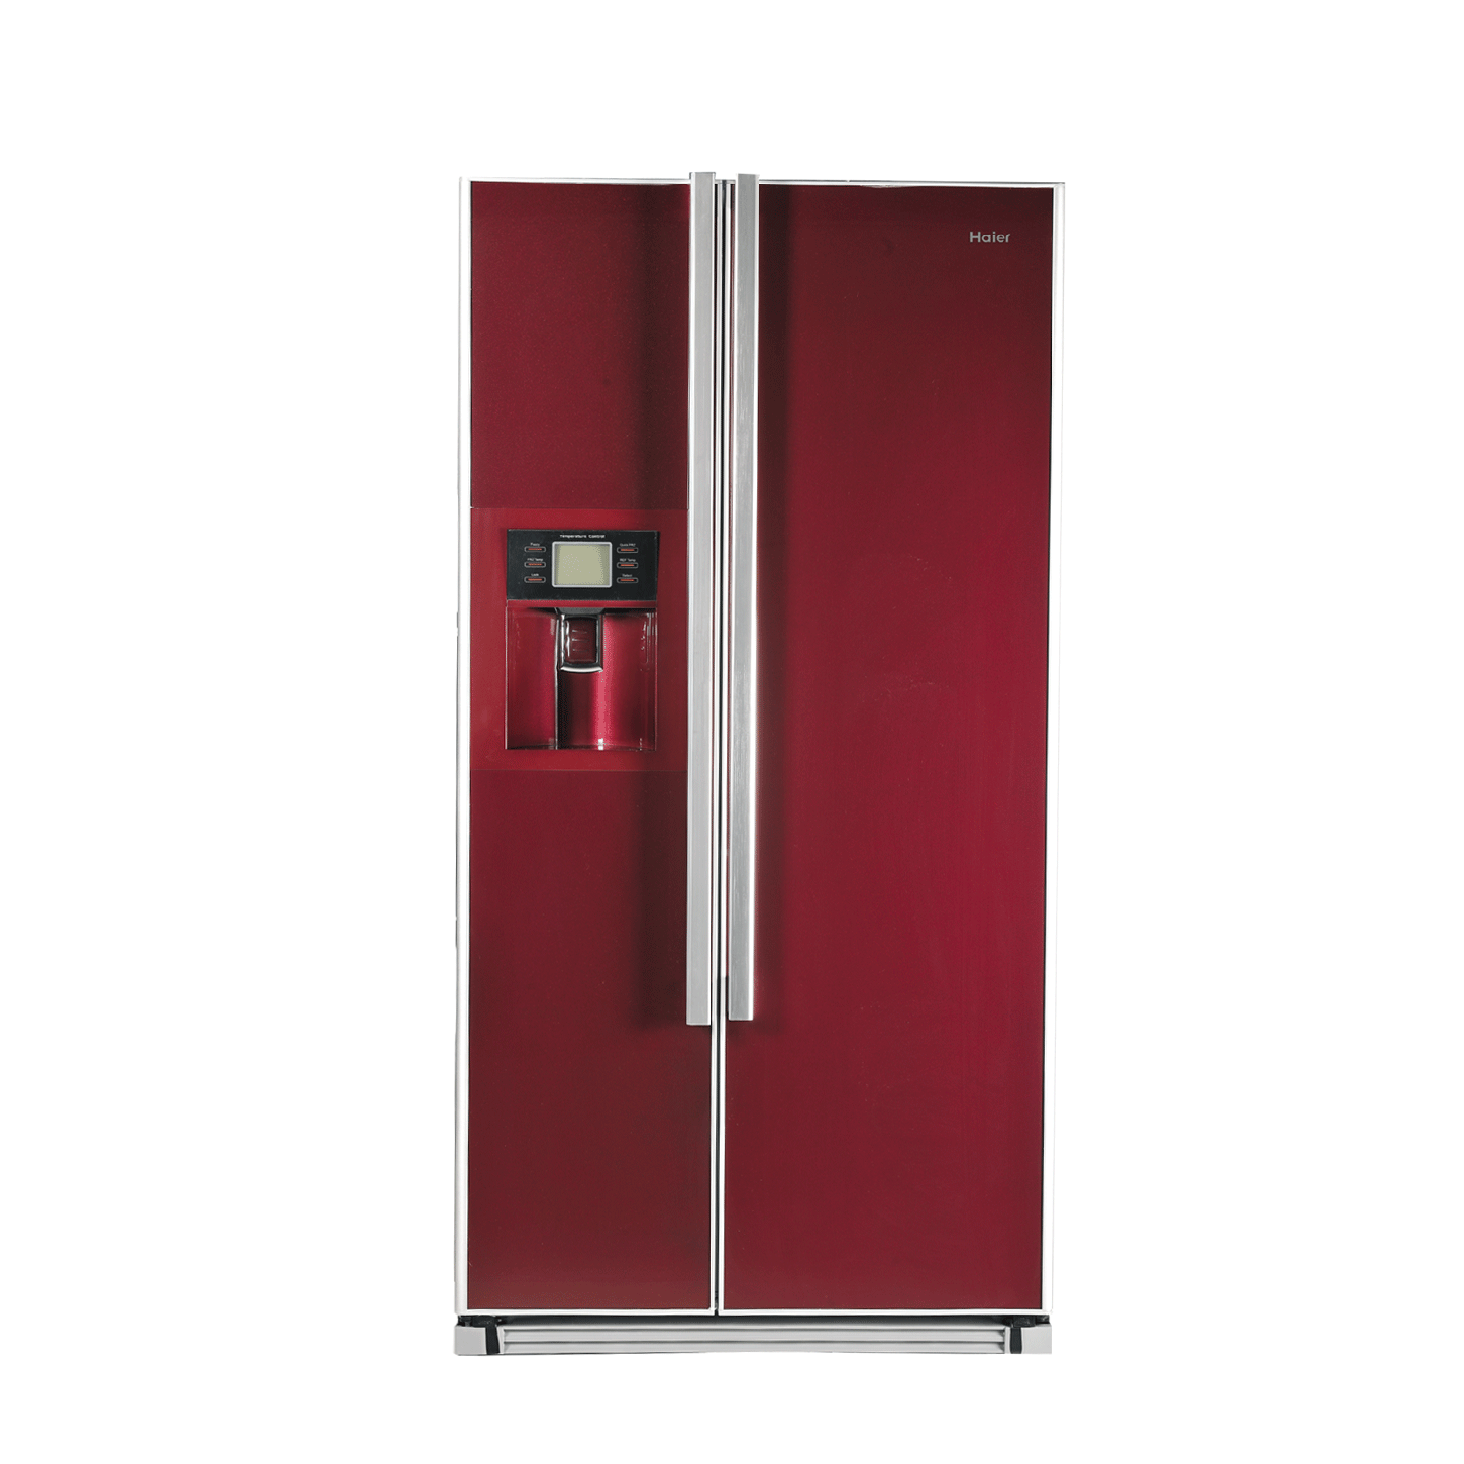 Red Refrigerator PNG pngteam.com